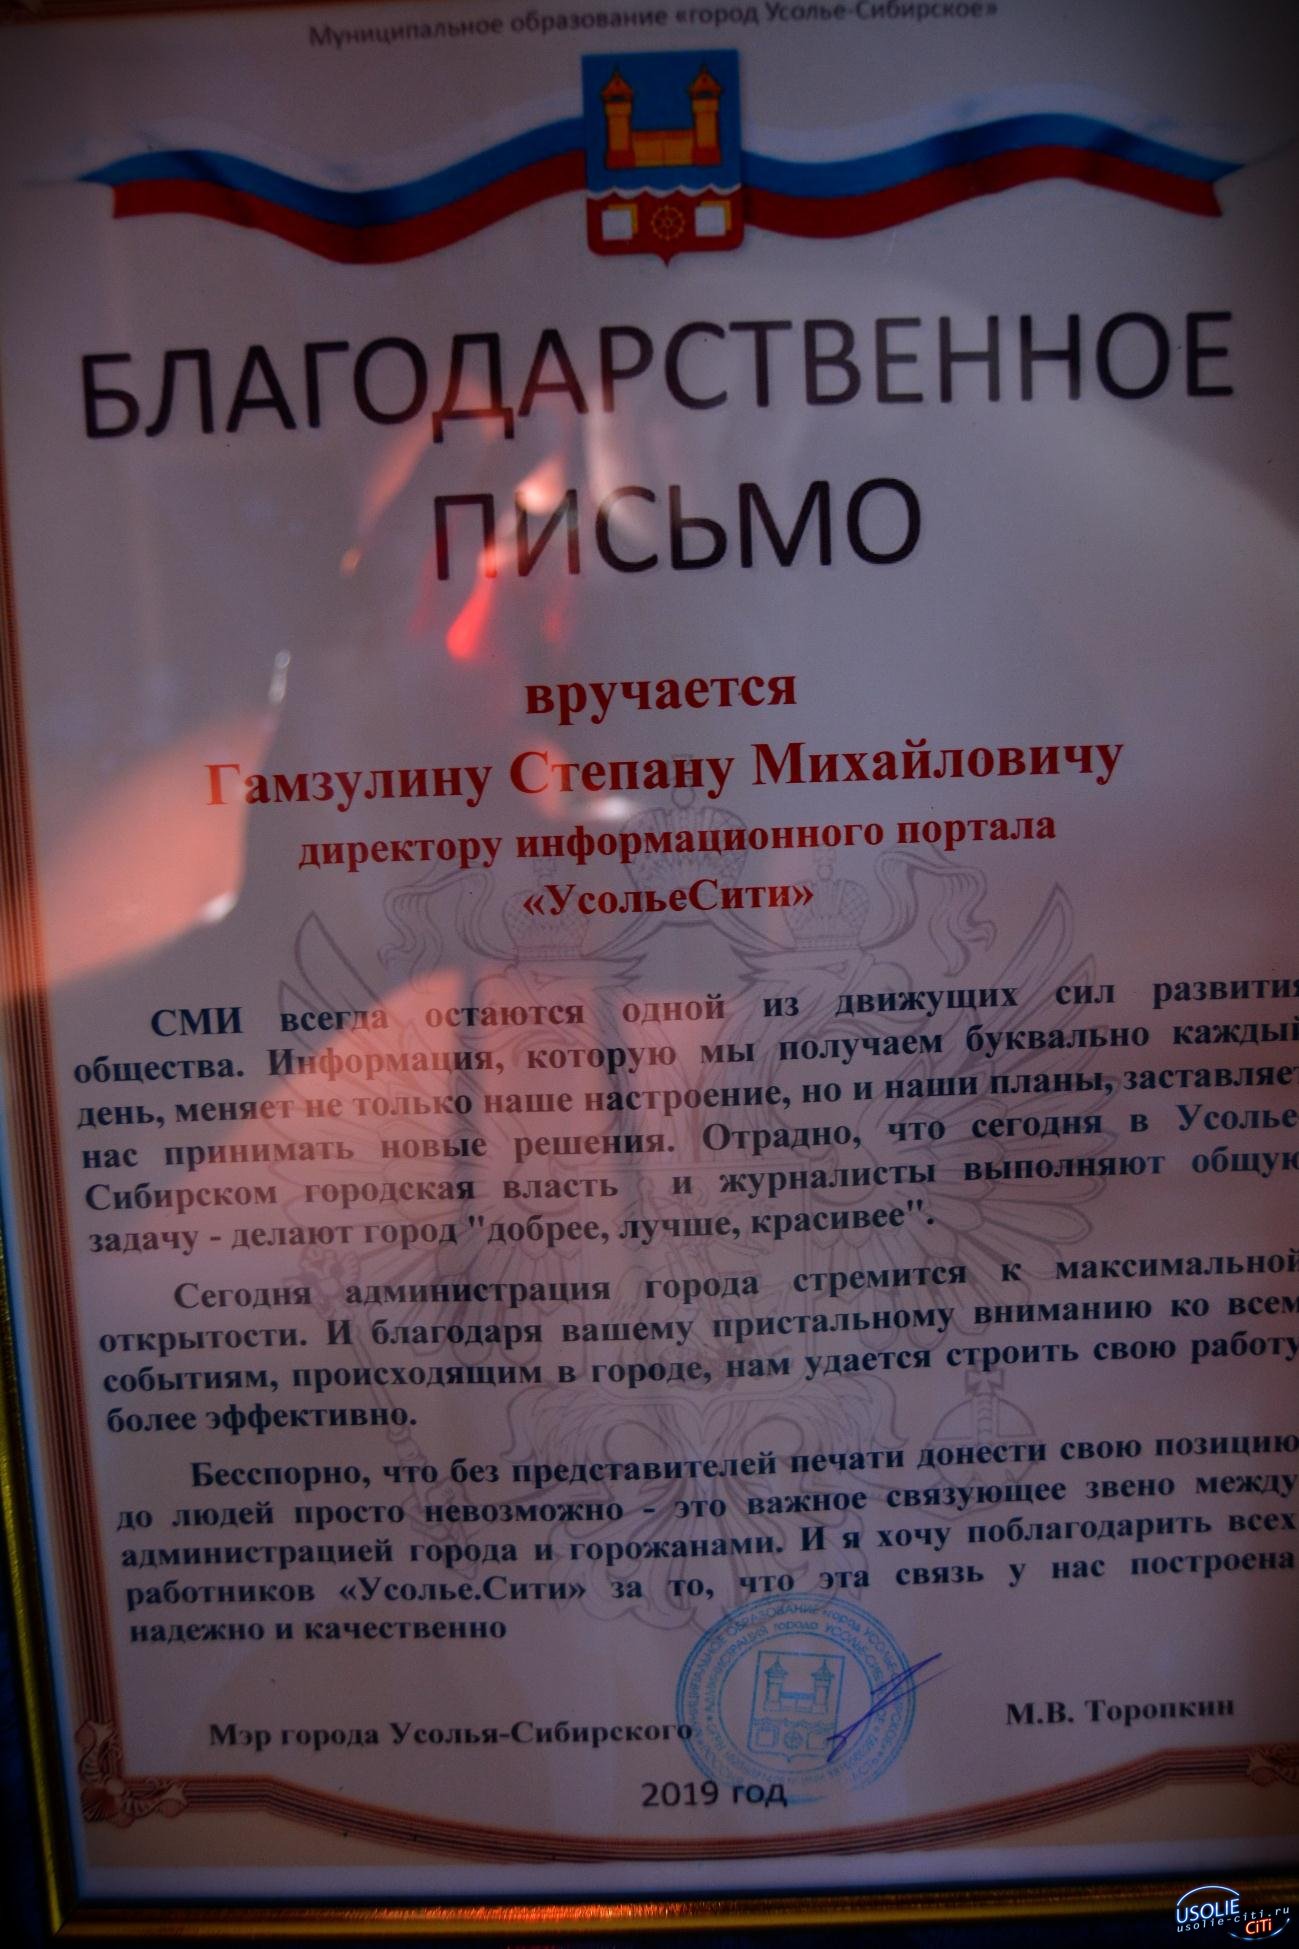 Максим Торопкин вручил награду коллективу Усольесити